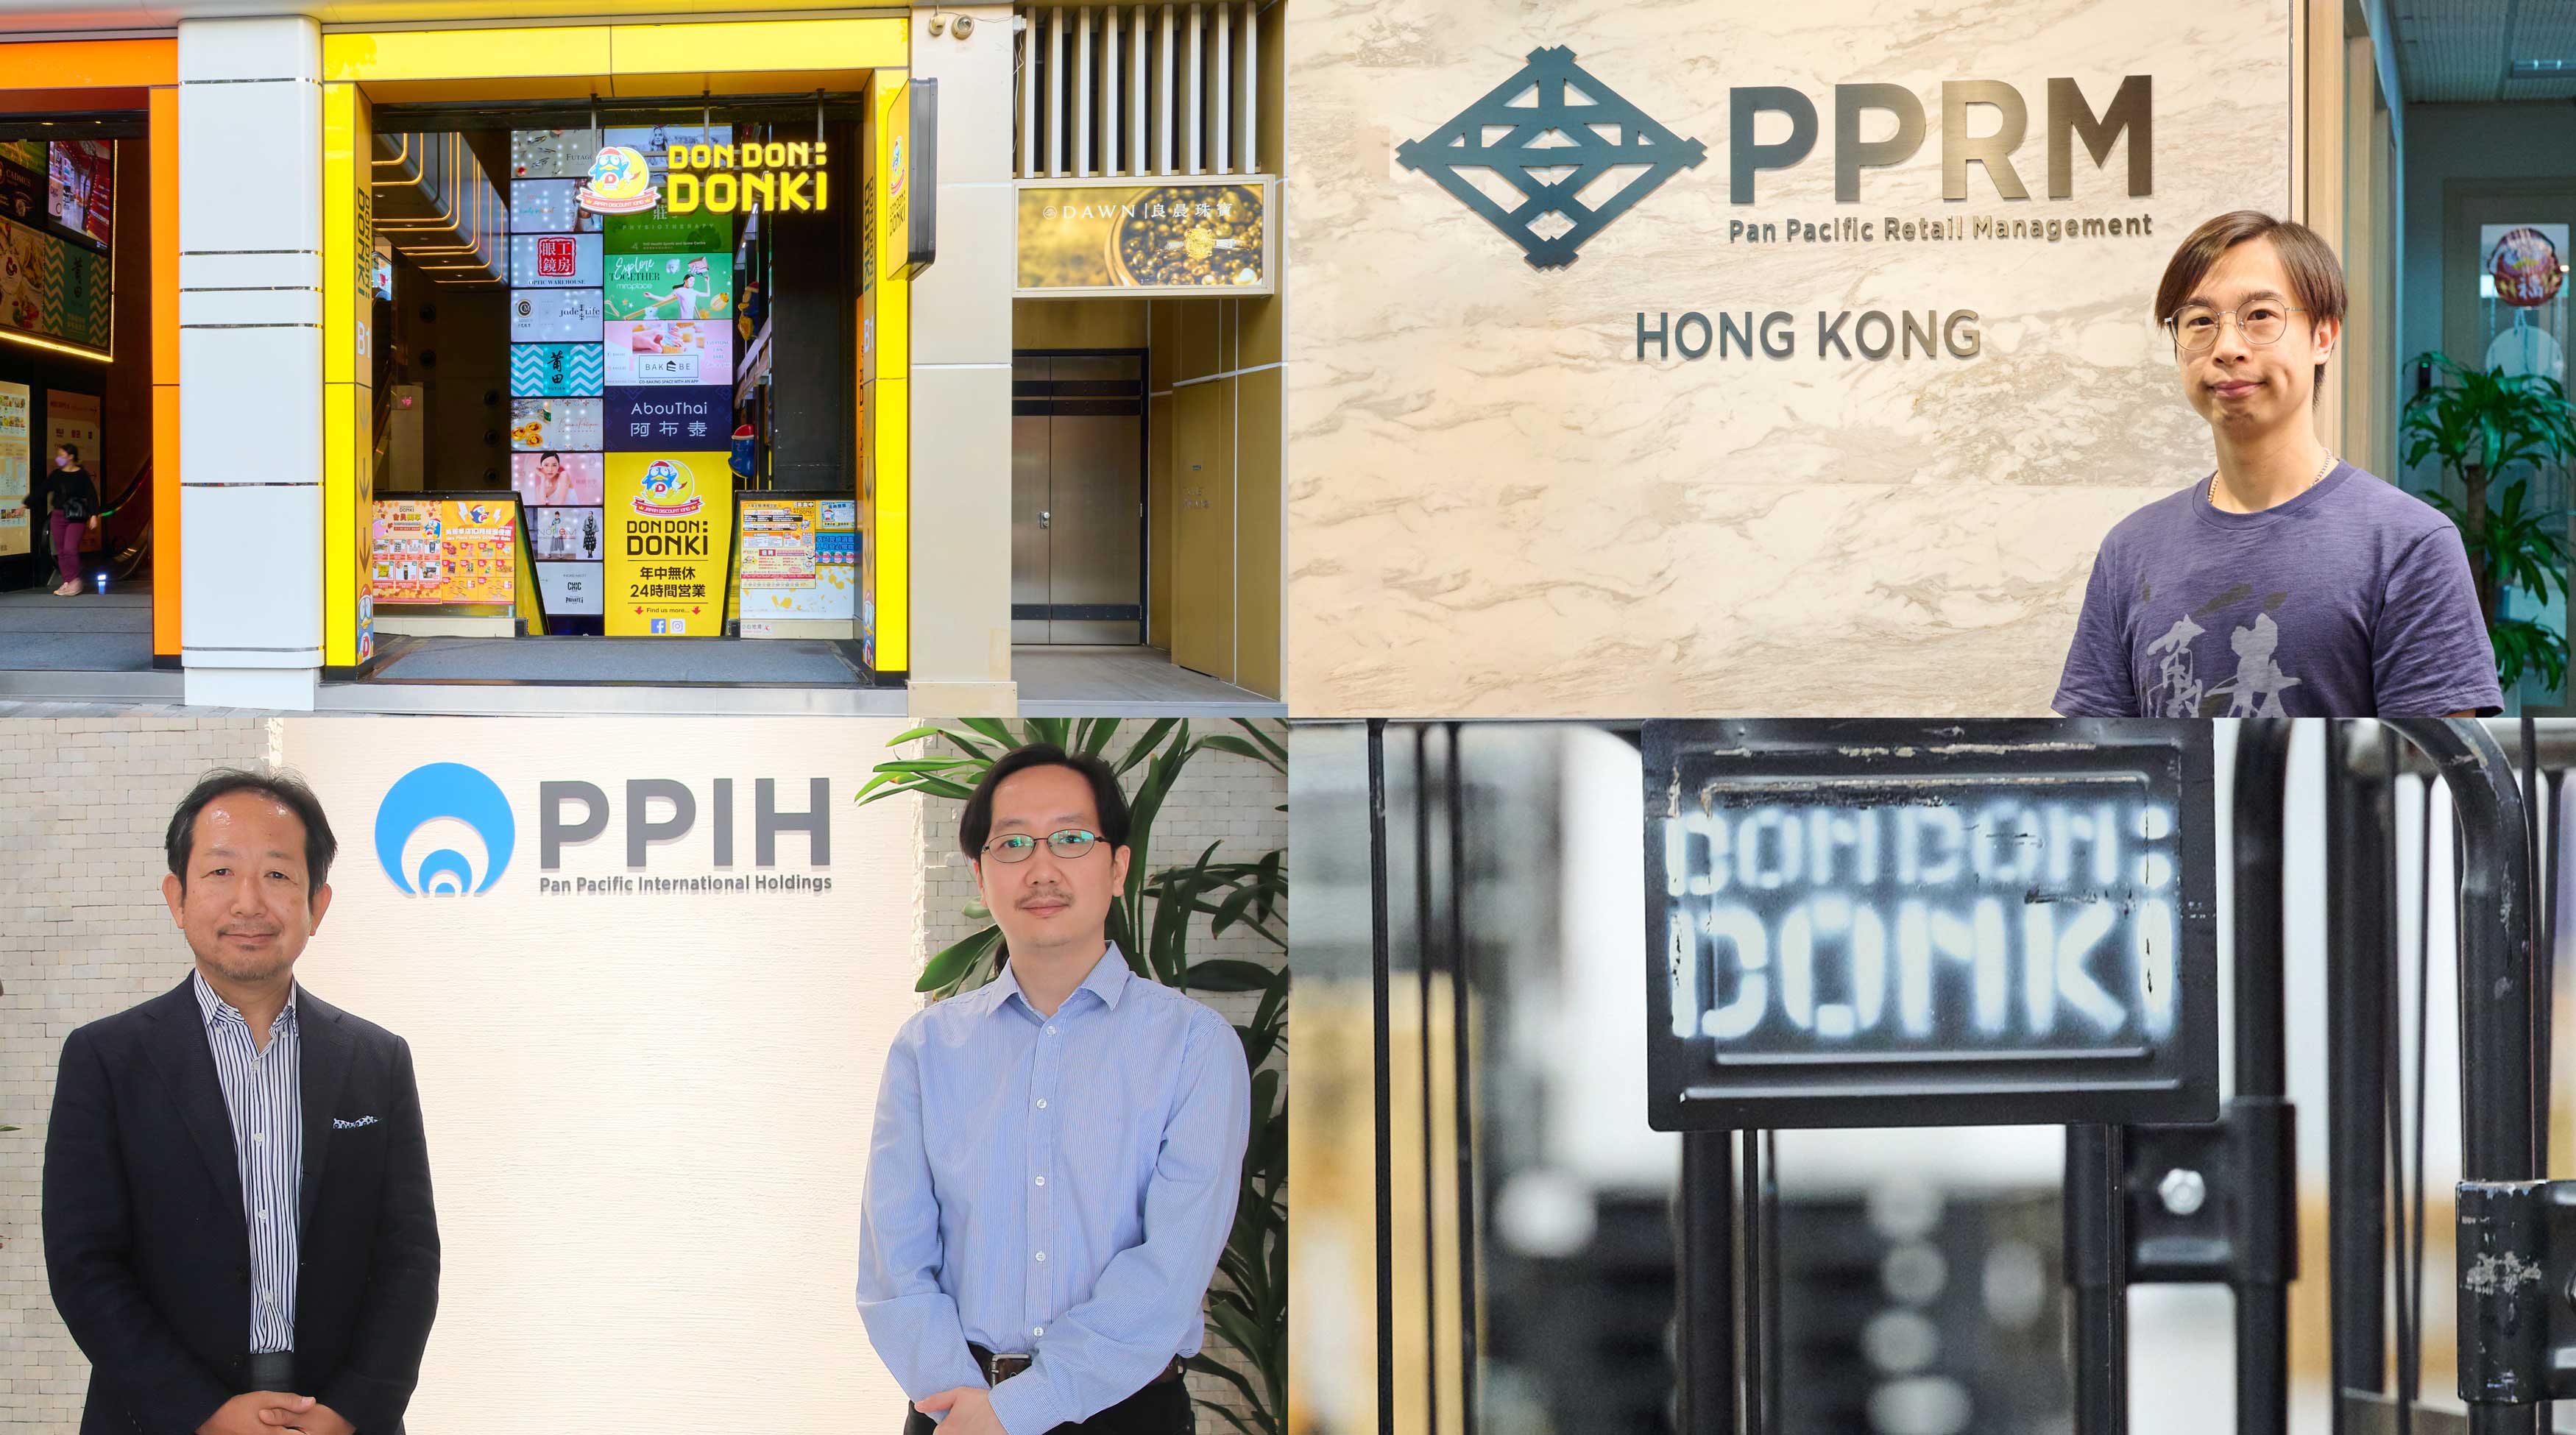 株式会社パン・パシフィック・インターナショナルホールディングス / Pan Pacific Retail Management (Hong Kong) Co., Ltd. 様